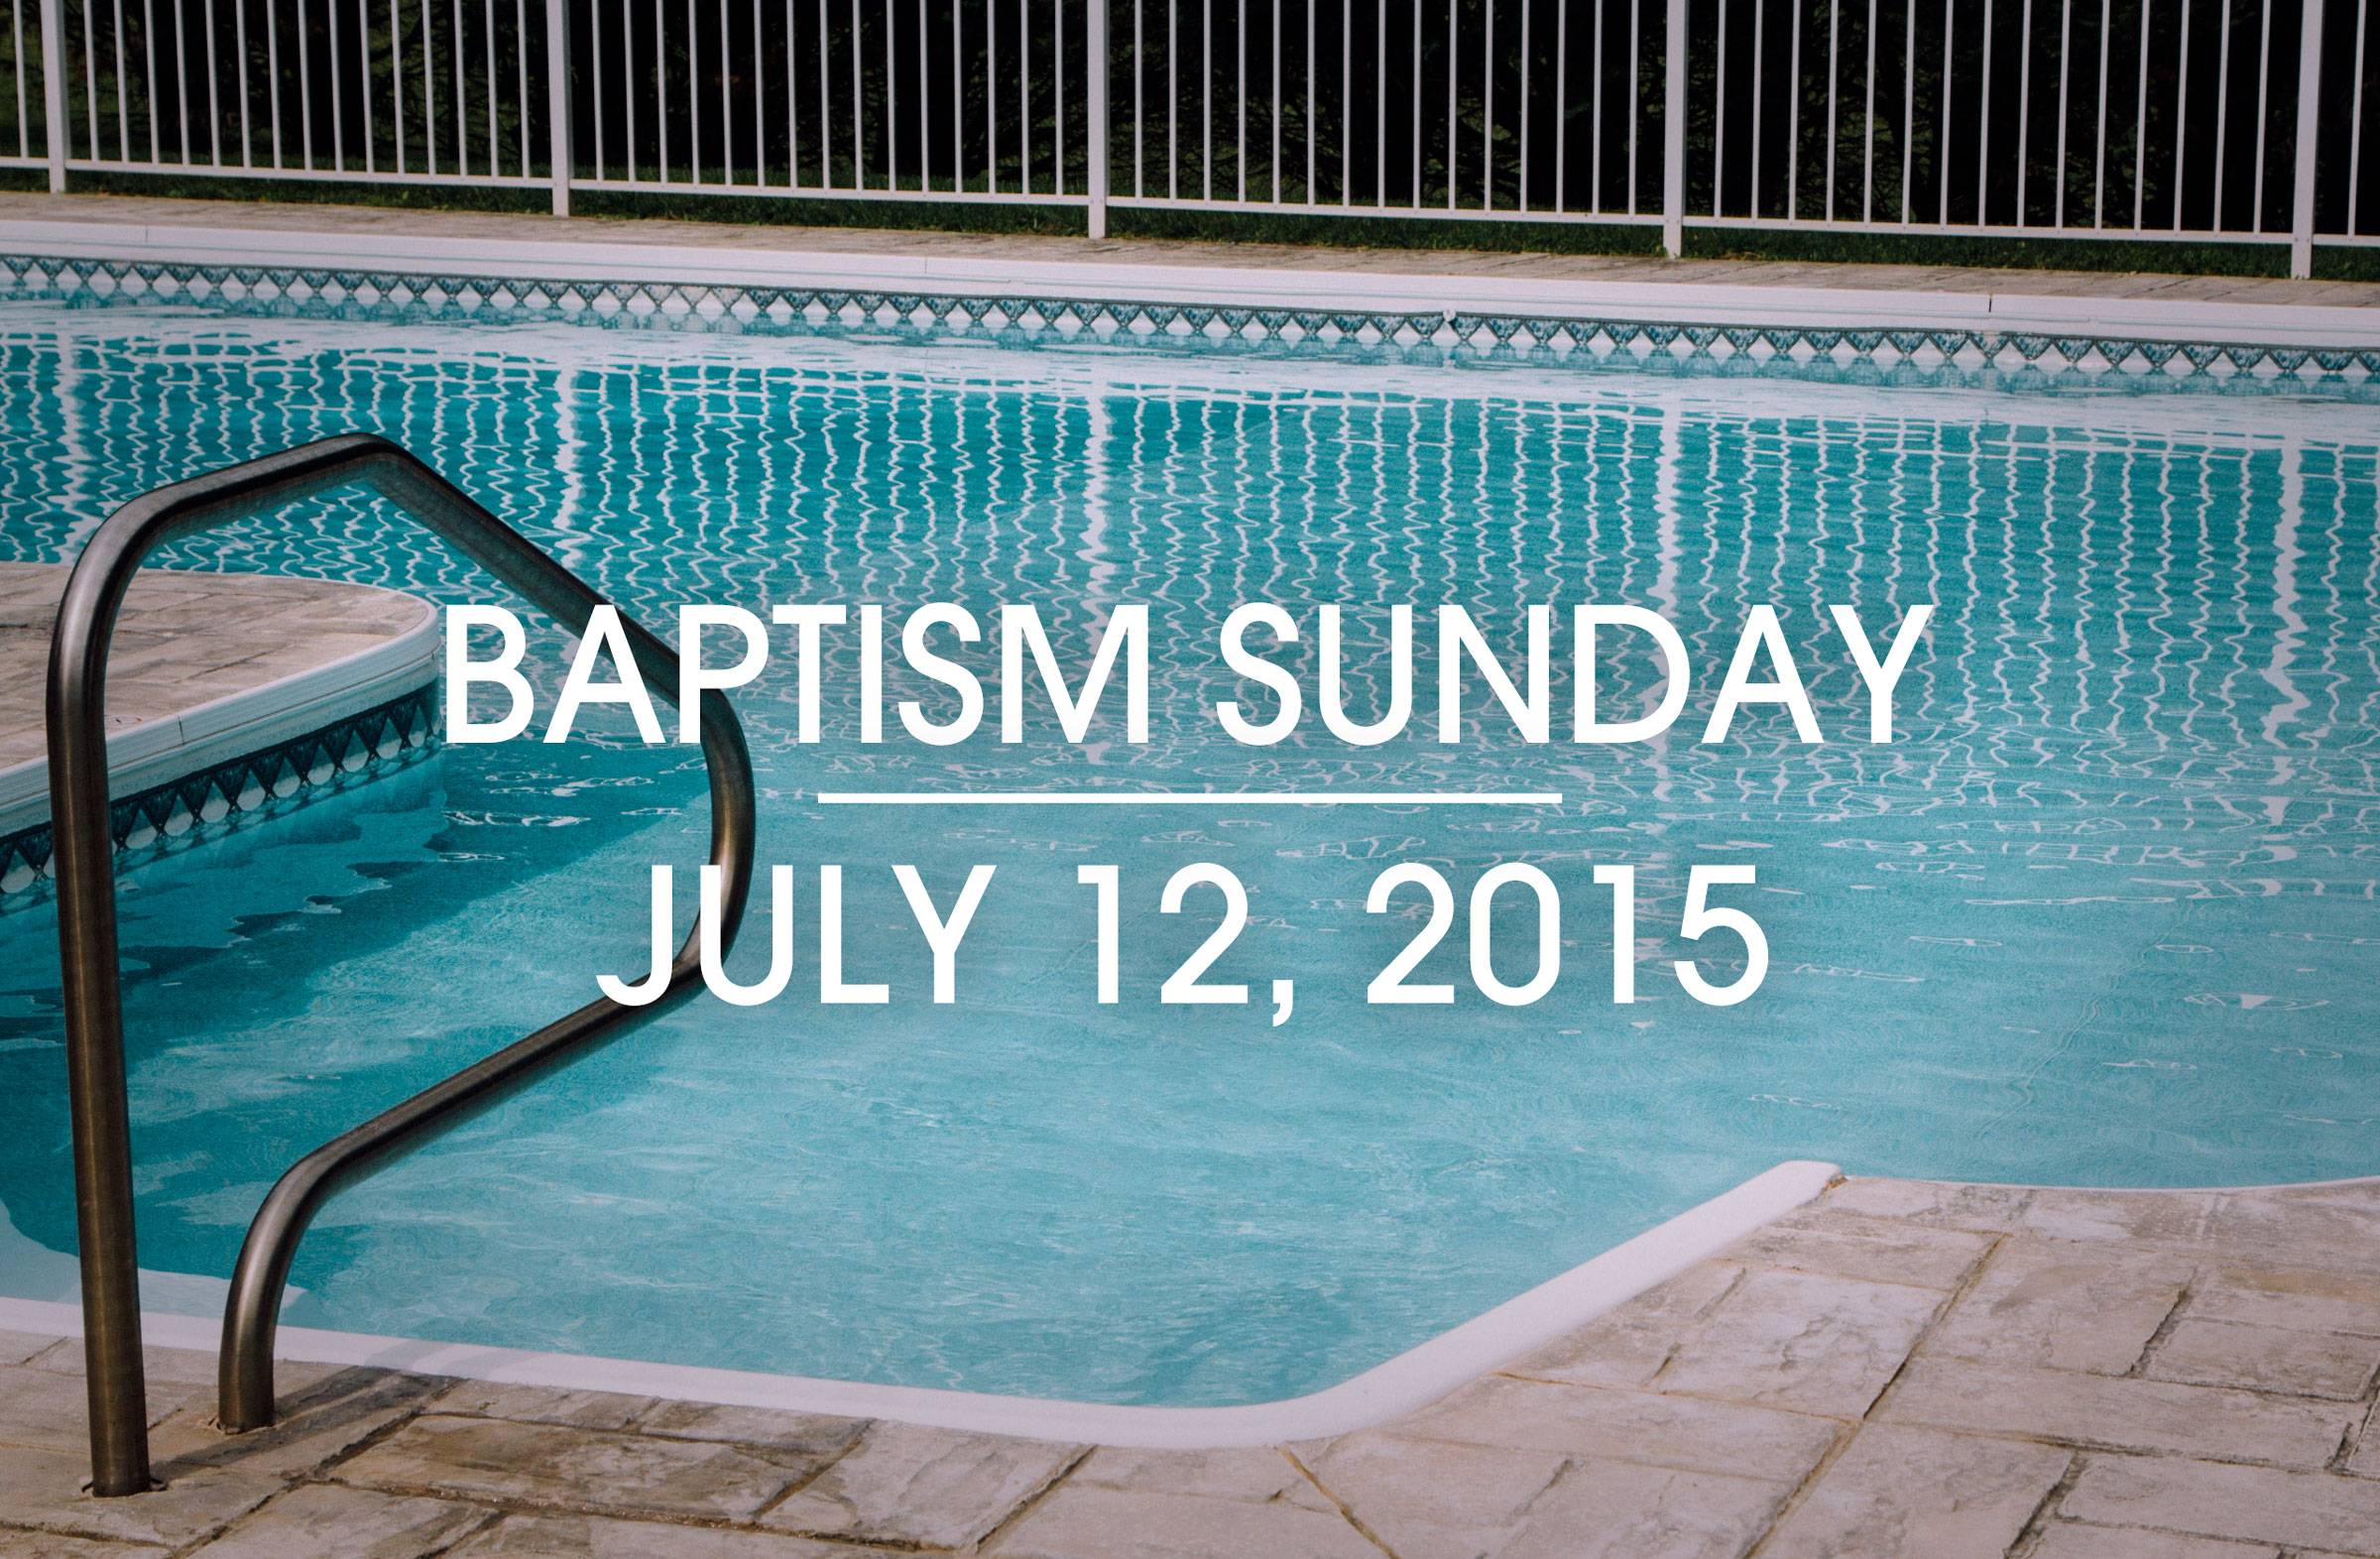 grace-church-baptism-sunday-july-12